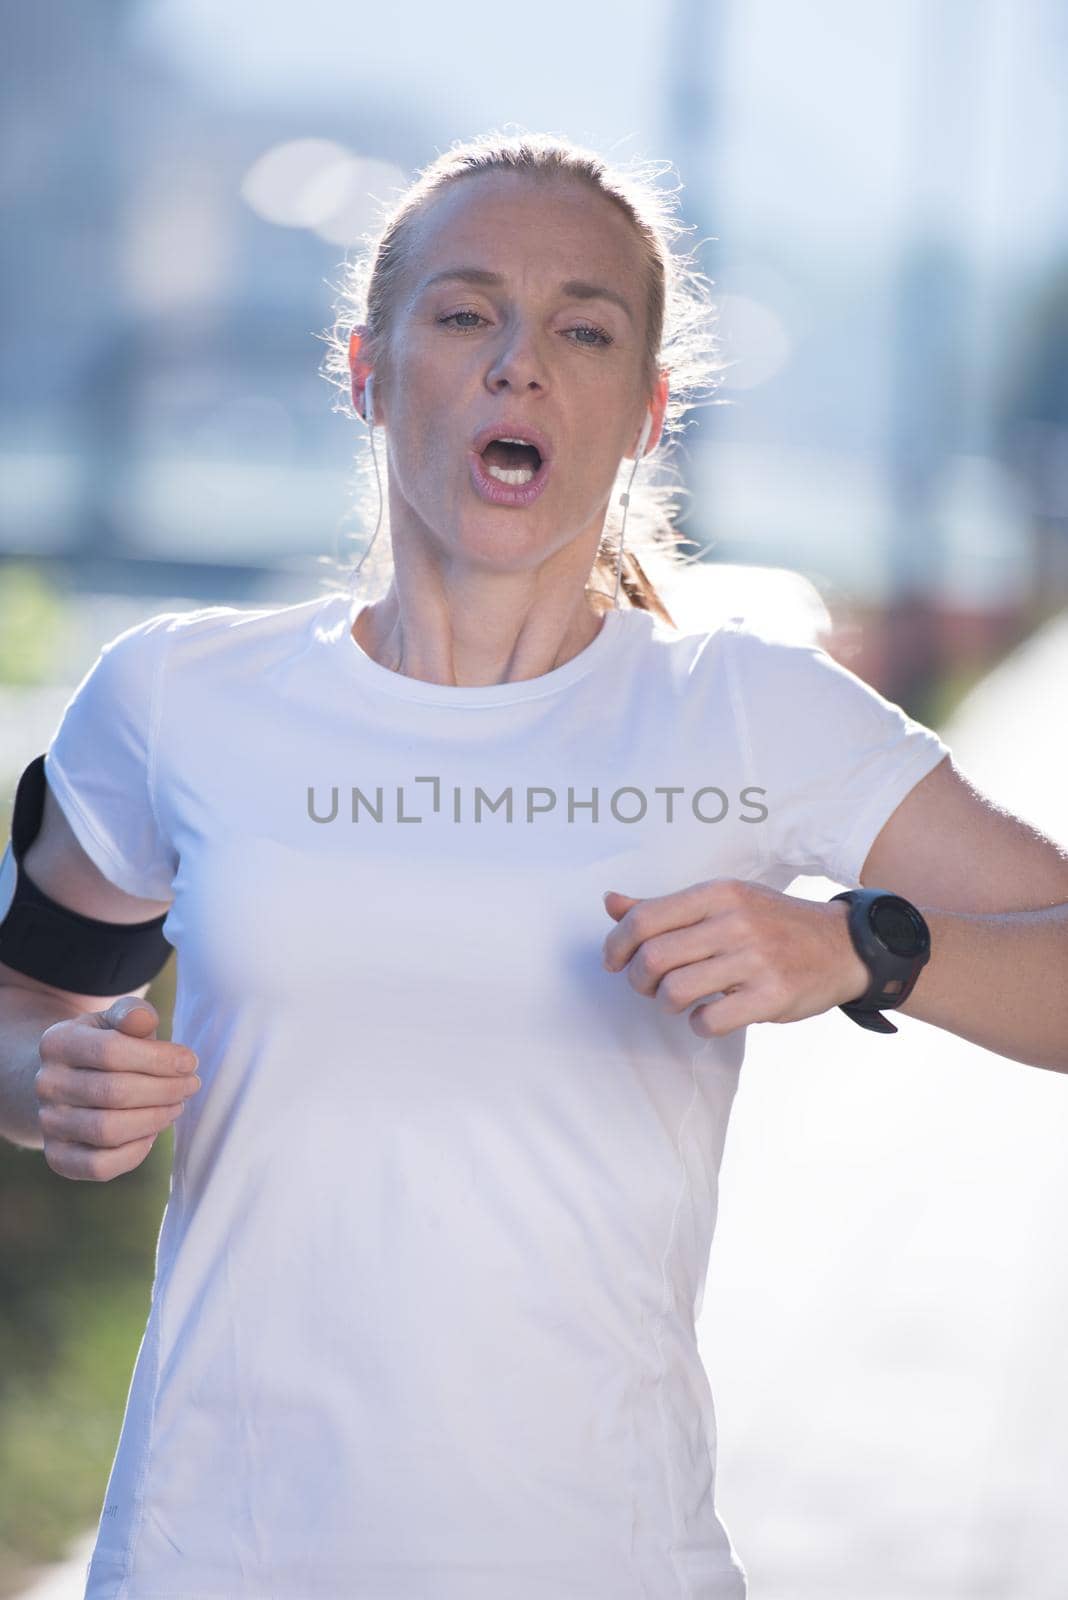 sporty woman running  on sidewalk by dotshock